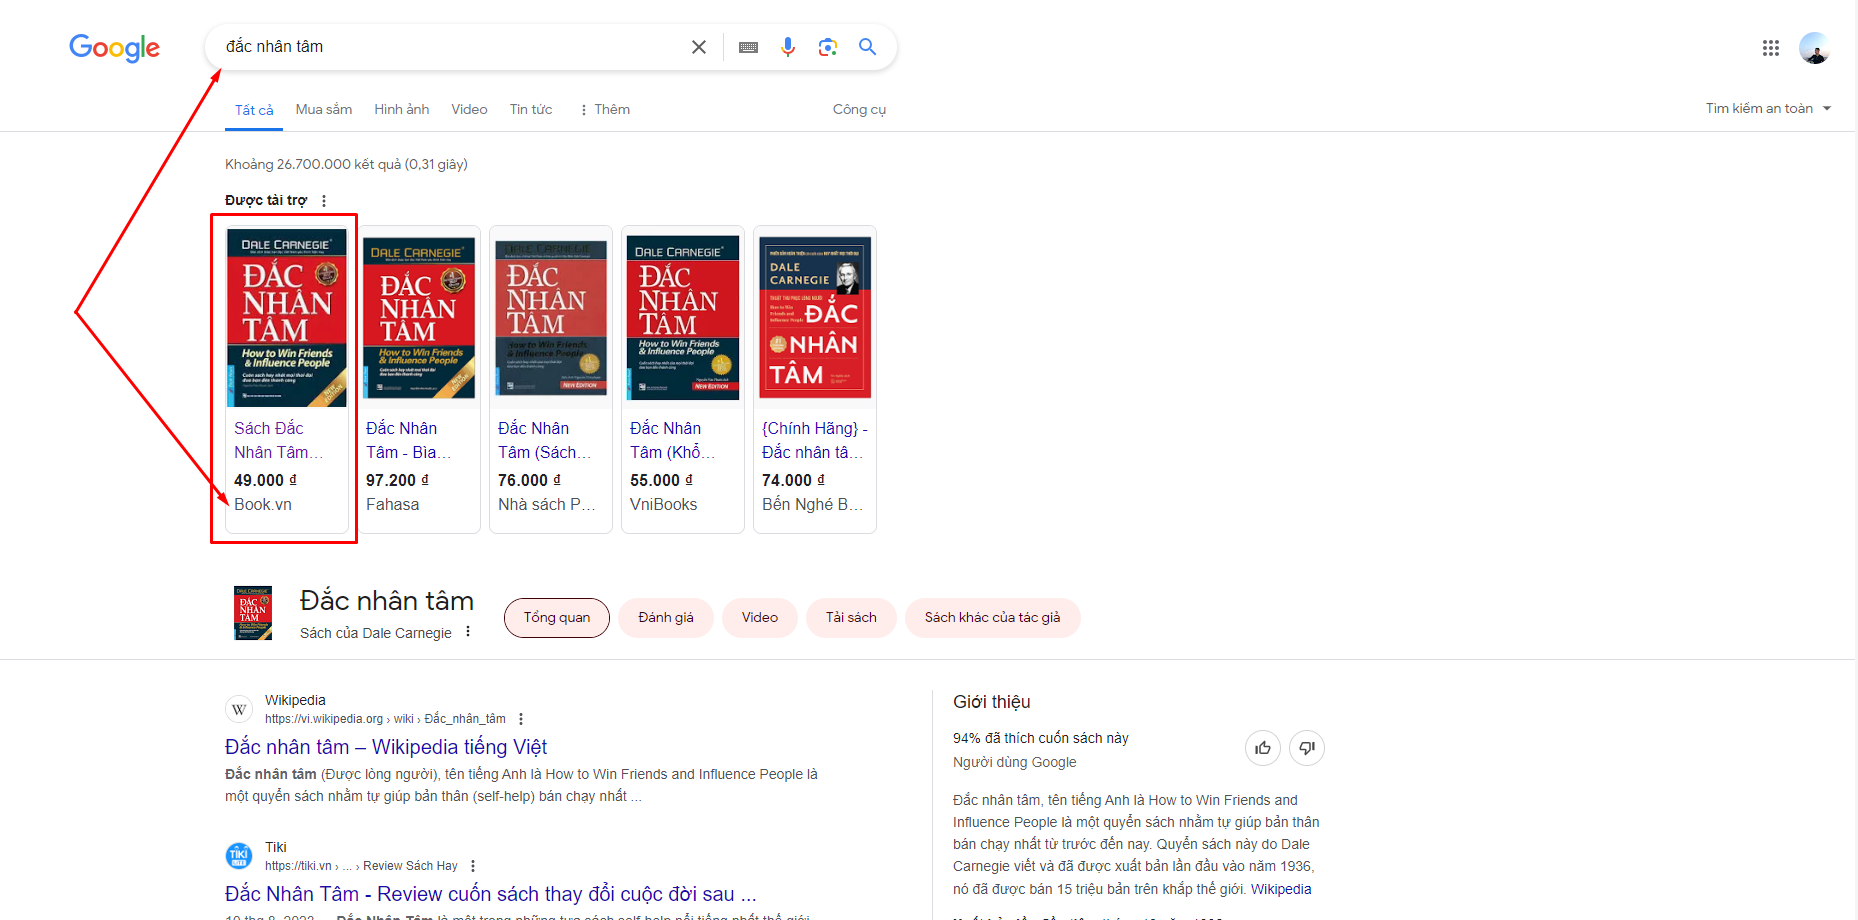 google ads shopping là gì?